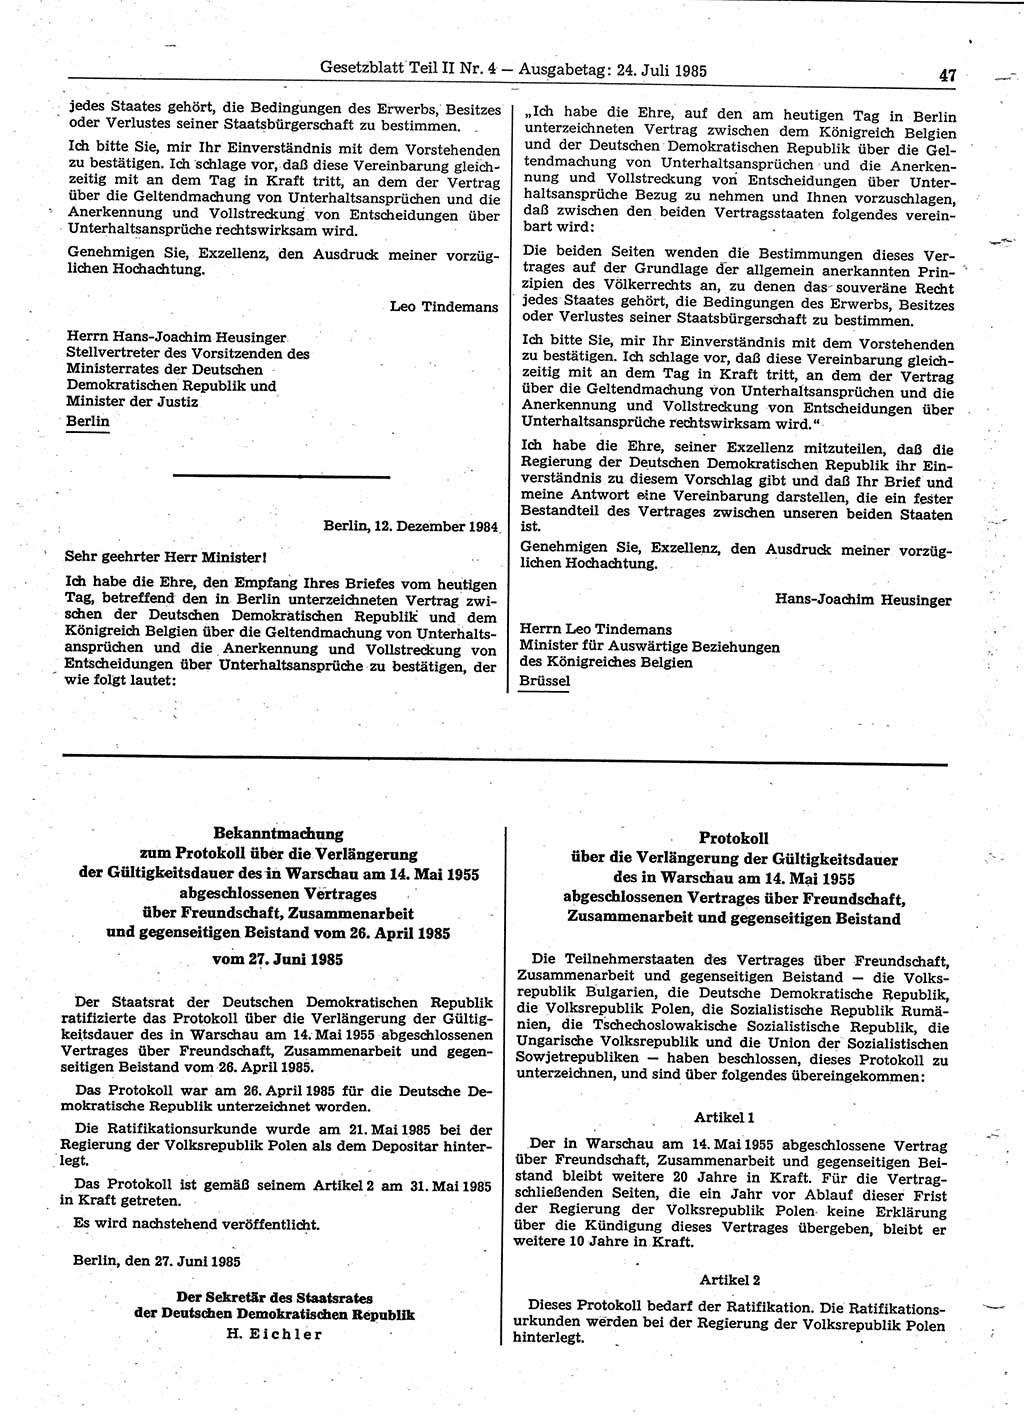 Gesetzblatt (GBl.) der Deutschen Demokratischen Republik (DDR) Teil ⅠⅠ 1985, Seite 47 (GBl. DDR ⅠⅠ 1985, S. 47)